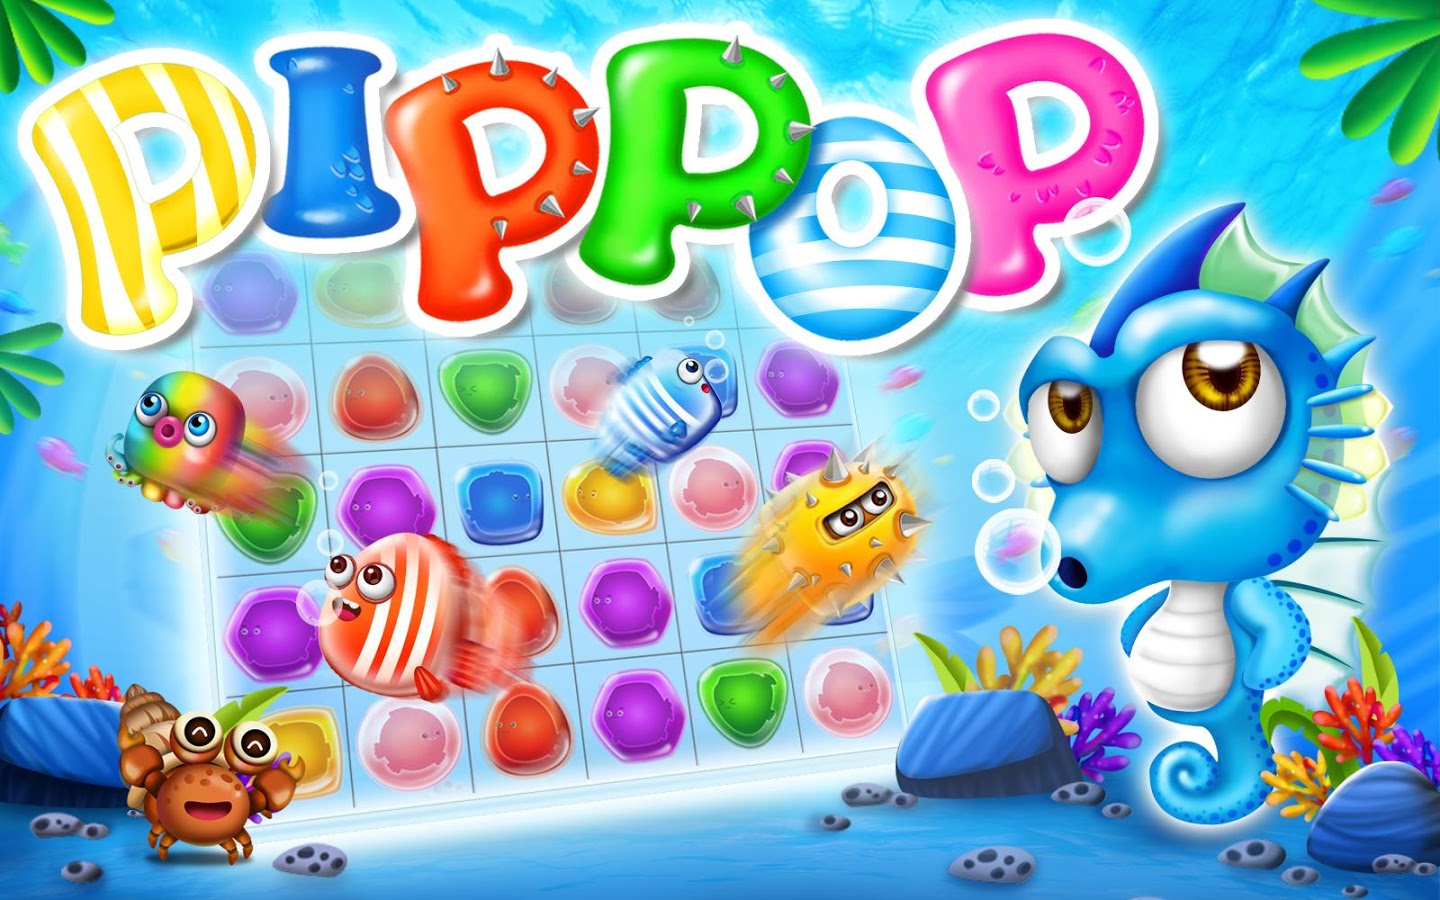 Pip Pop - 海洋消除游戏好玩吗？Pip Pop - 海洋消除游戏游戏介绍